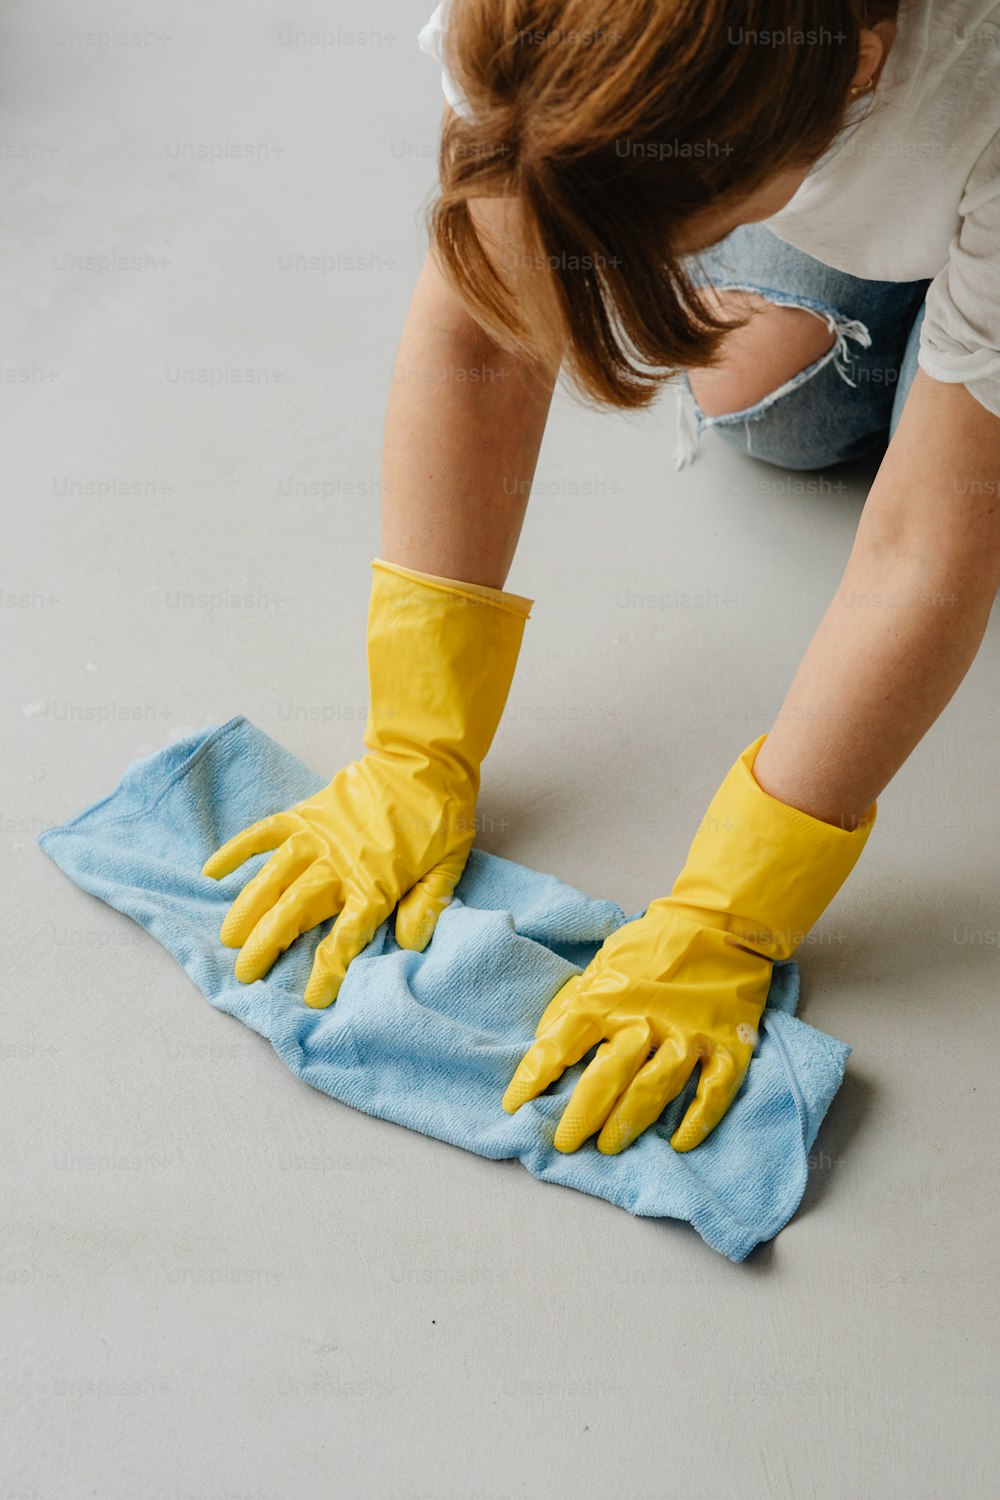 Eine Frau in gelben Handschuhen wischt ein blaues Handtuch ab